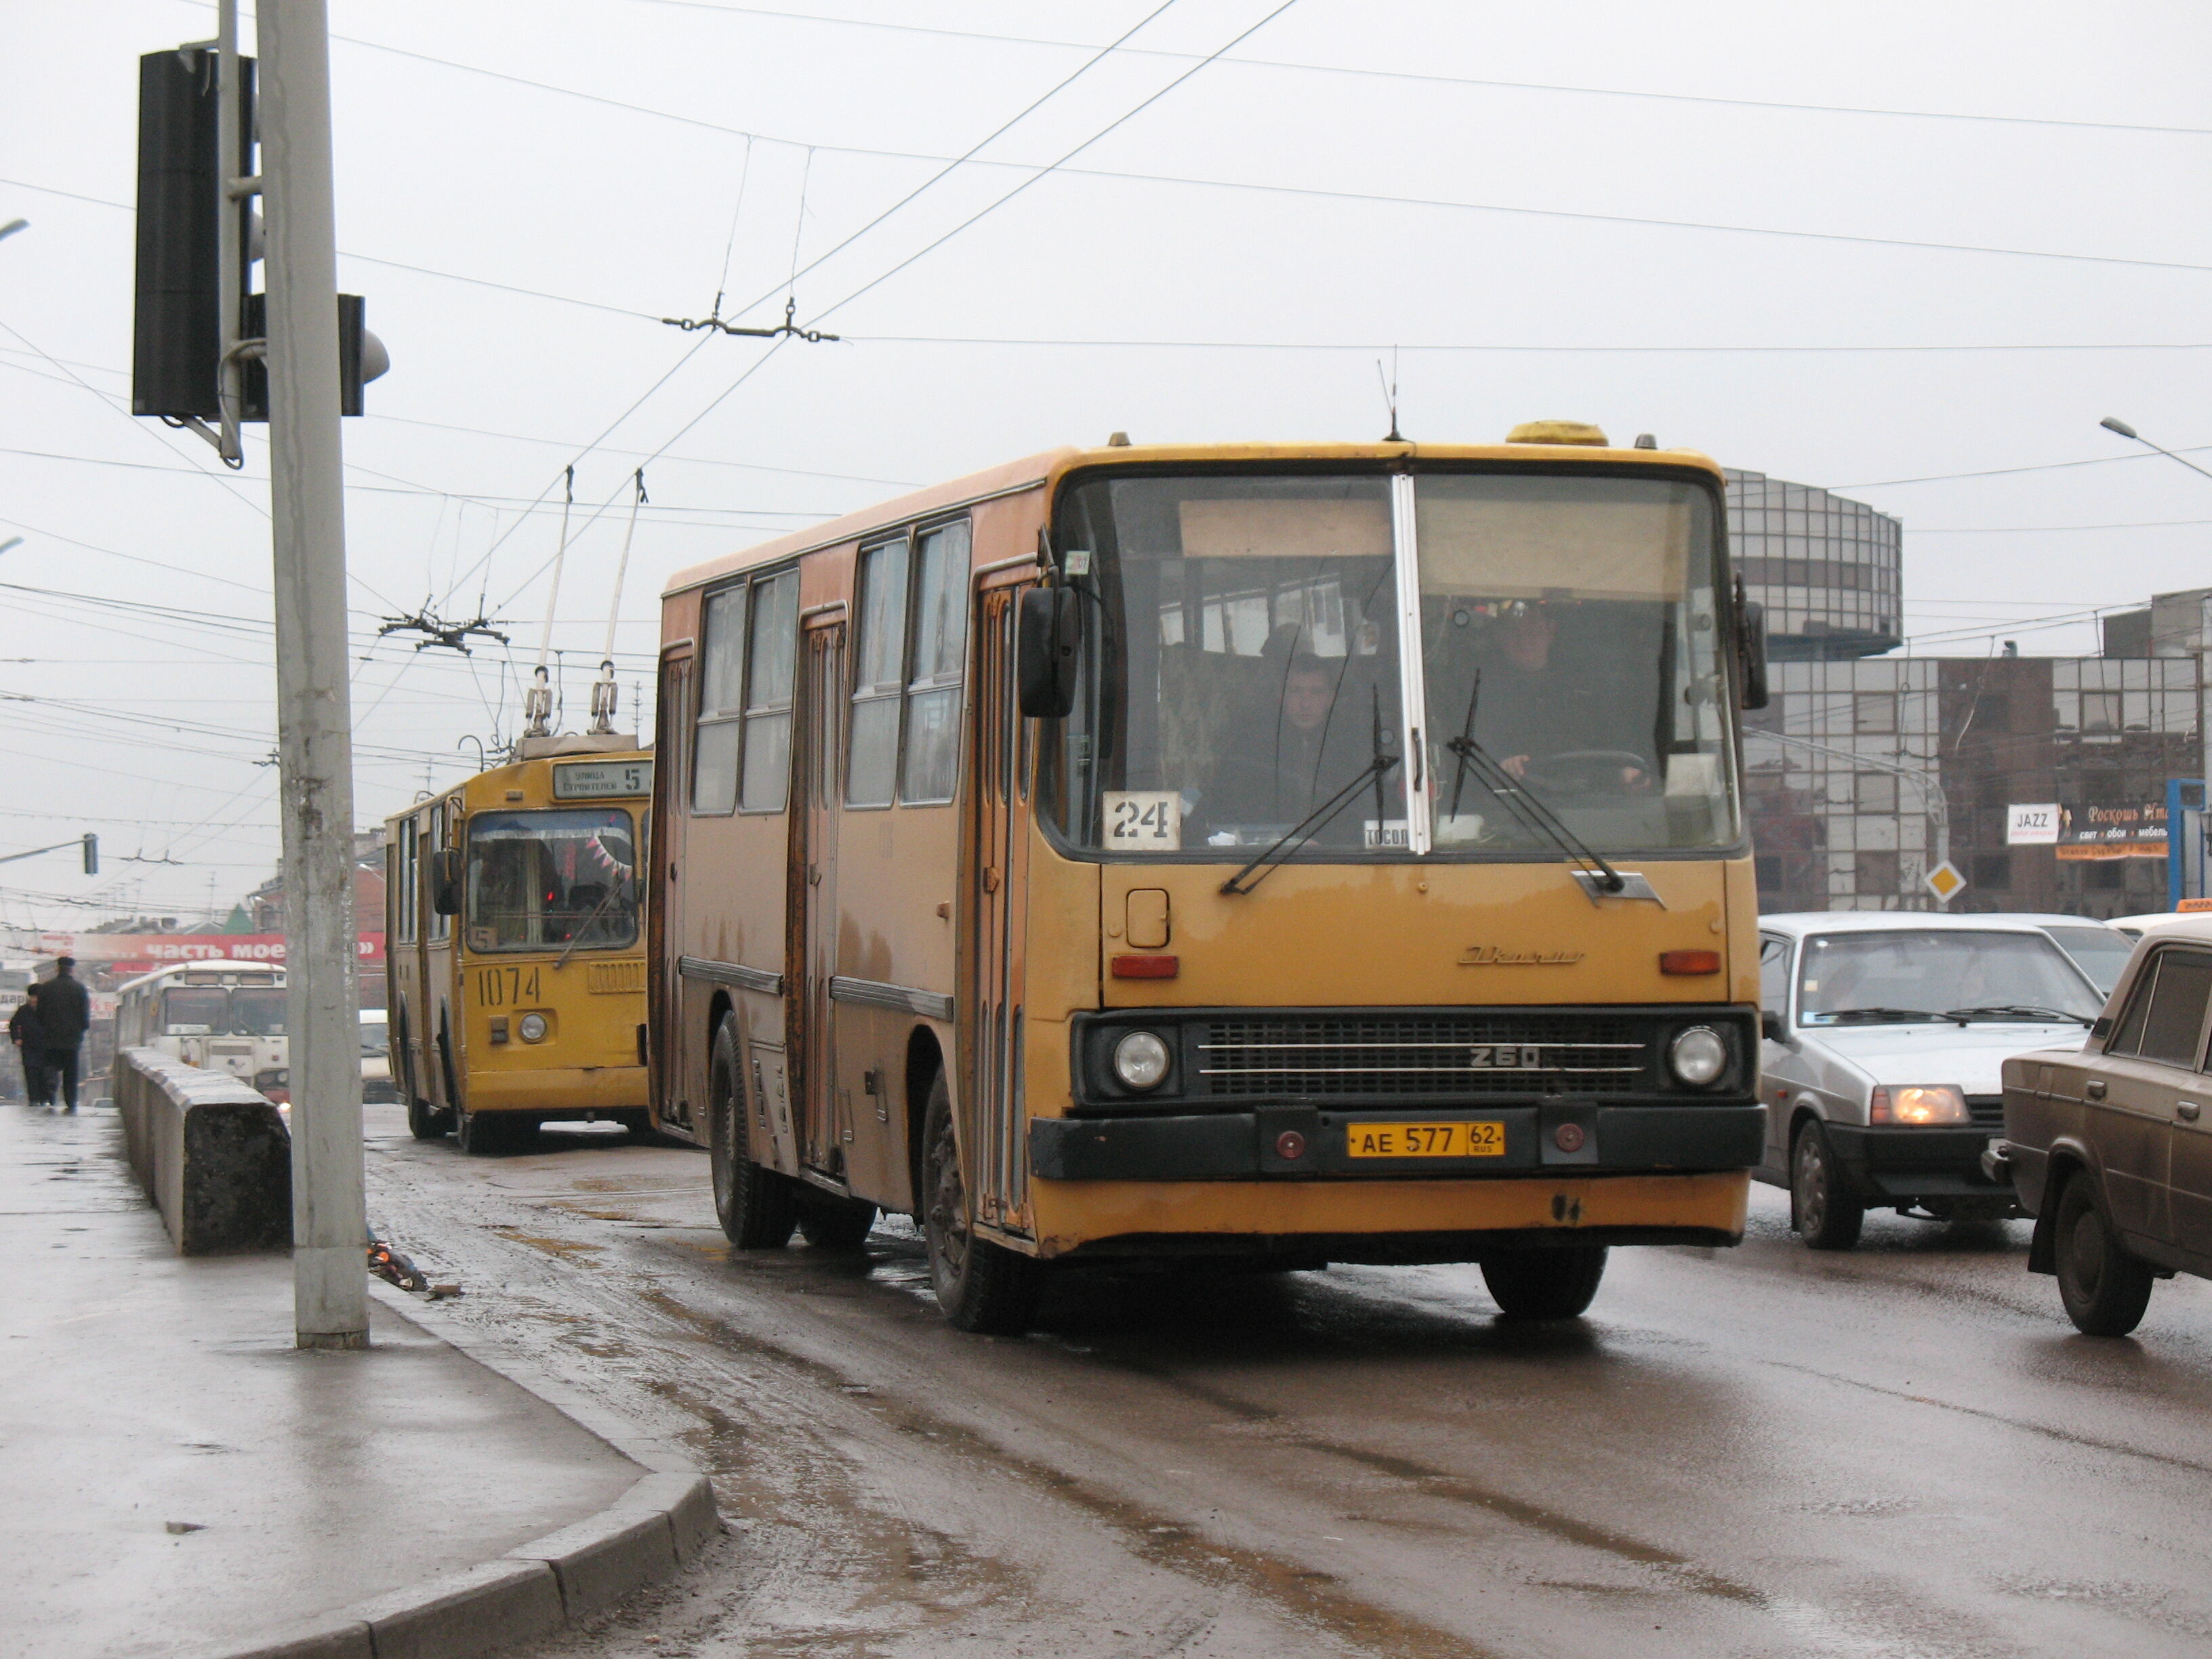 Городской автобус Ikarus 260.37 АЕ 577 62 ex-Kolomna